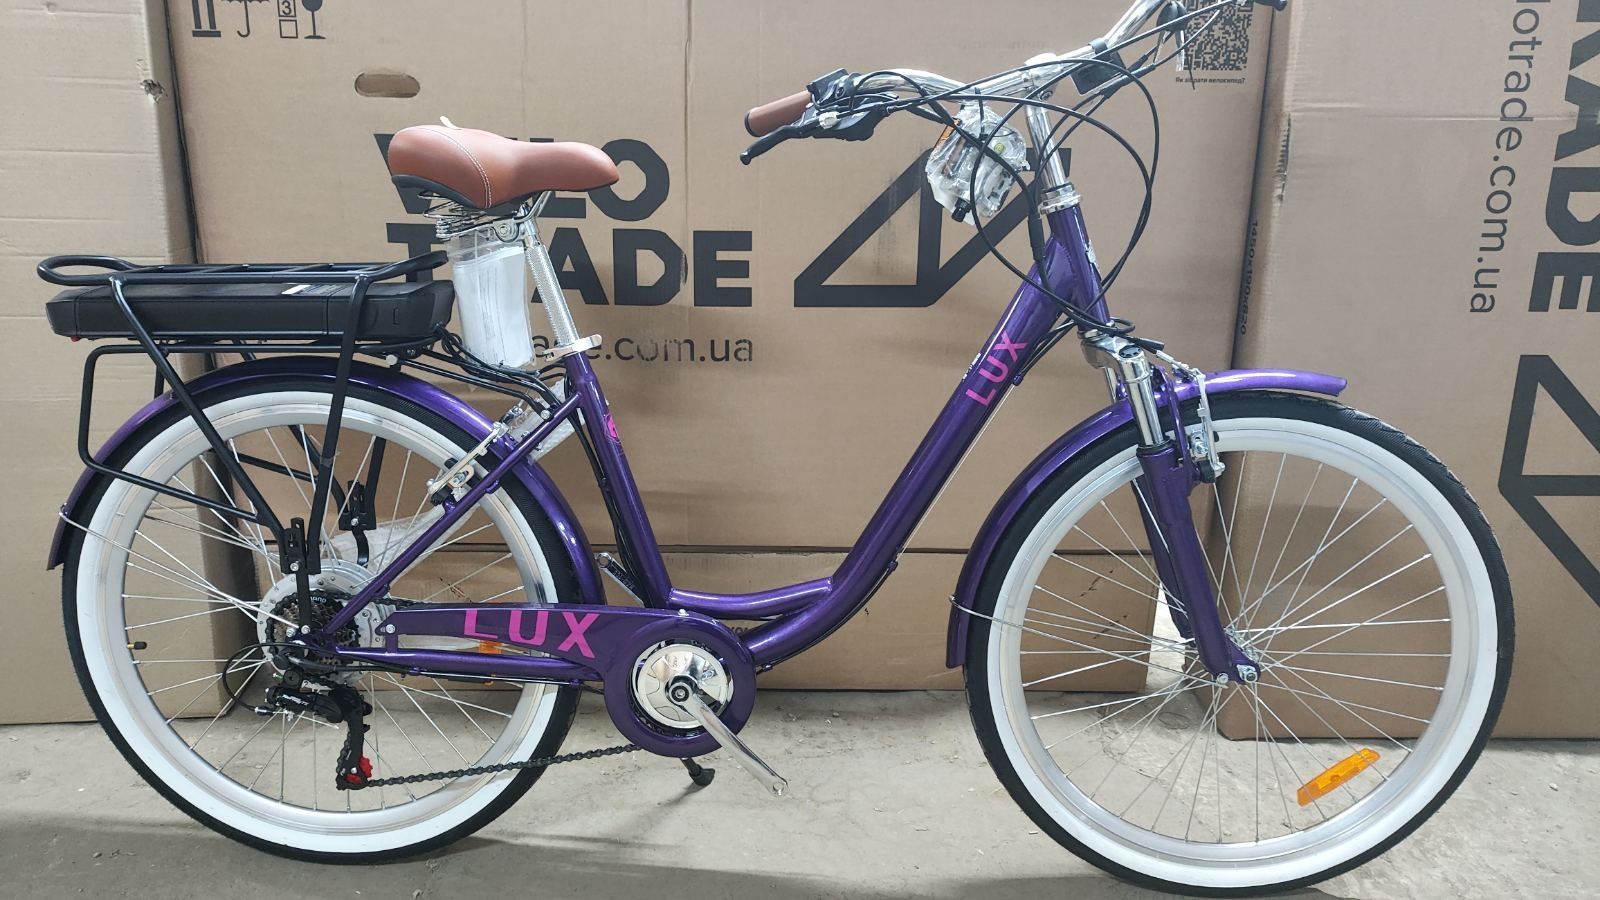 Електровелосипеди нові недорого в місті Суми